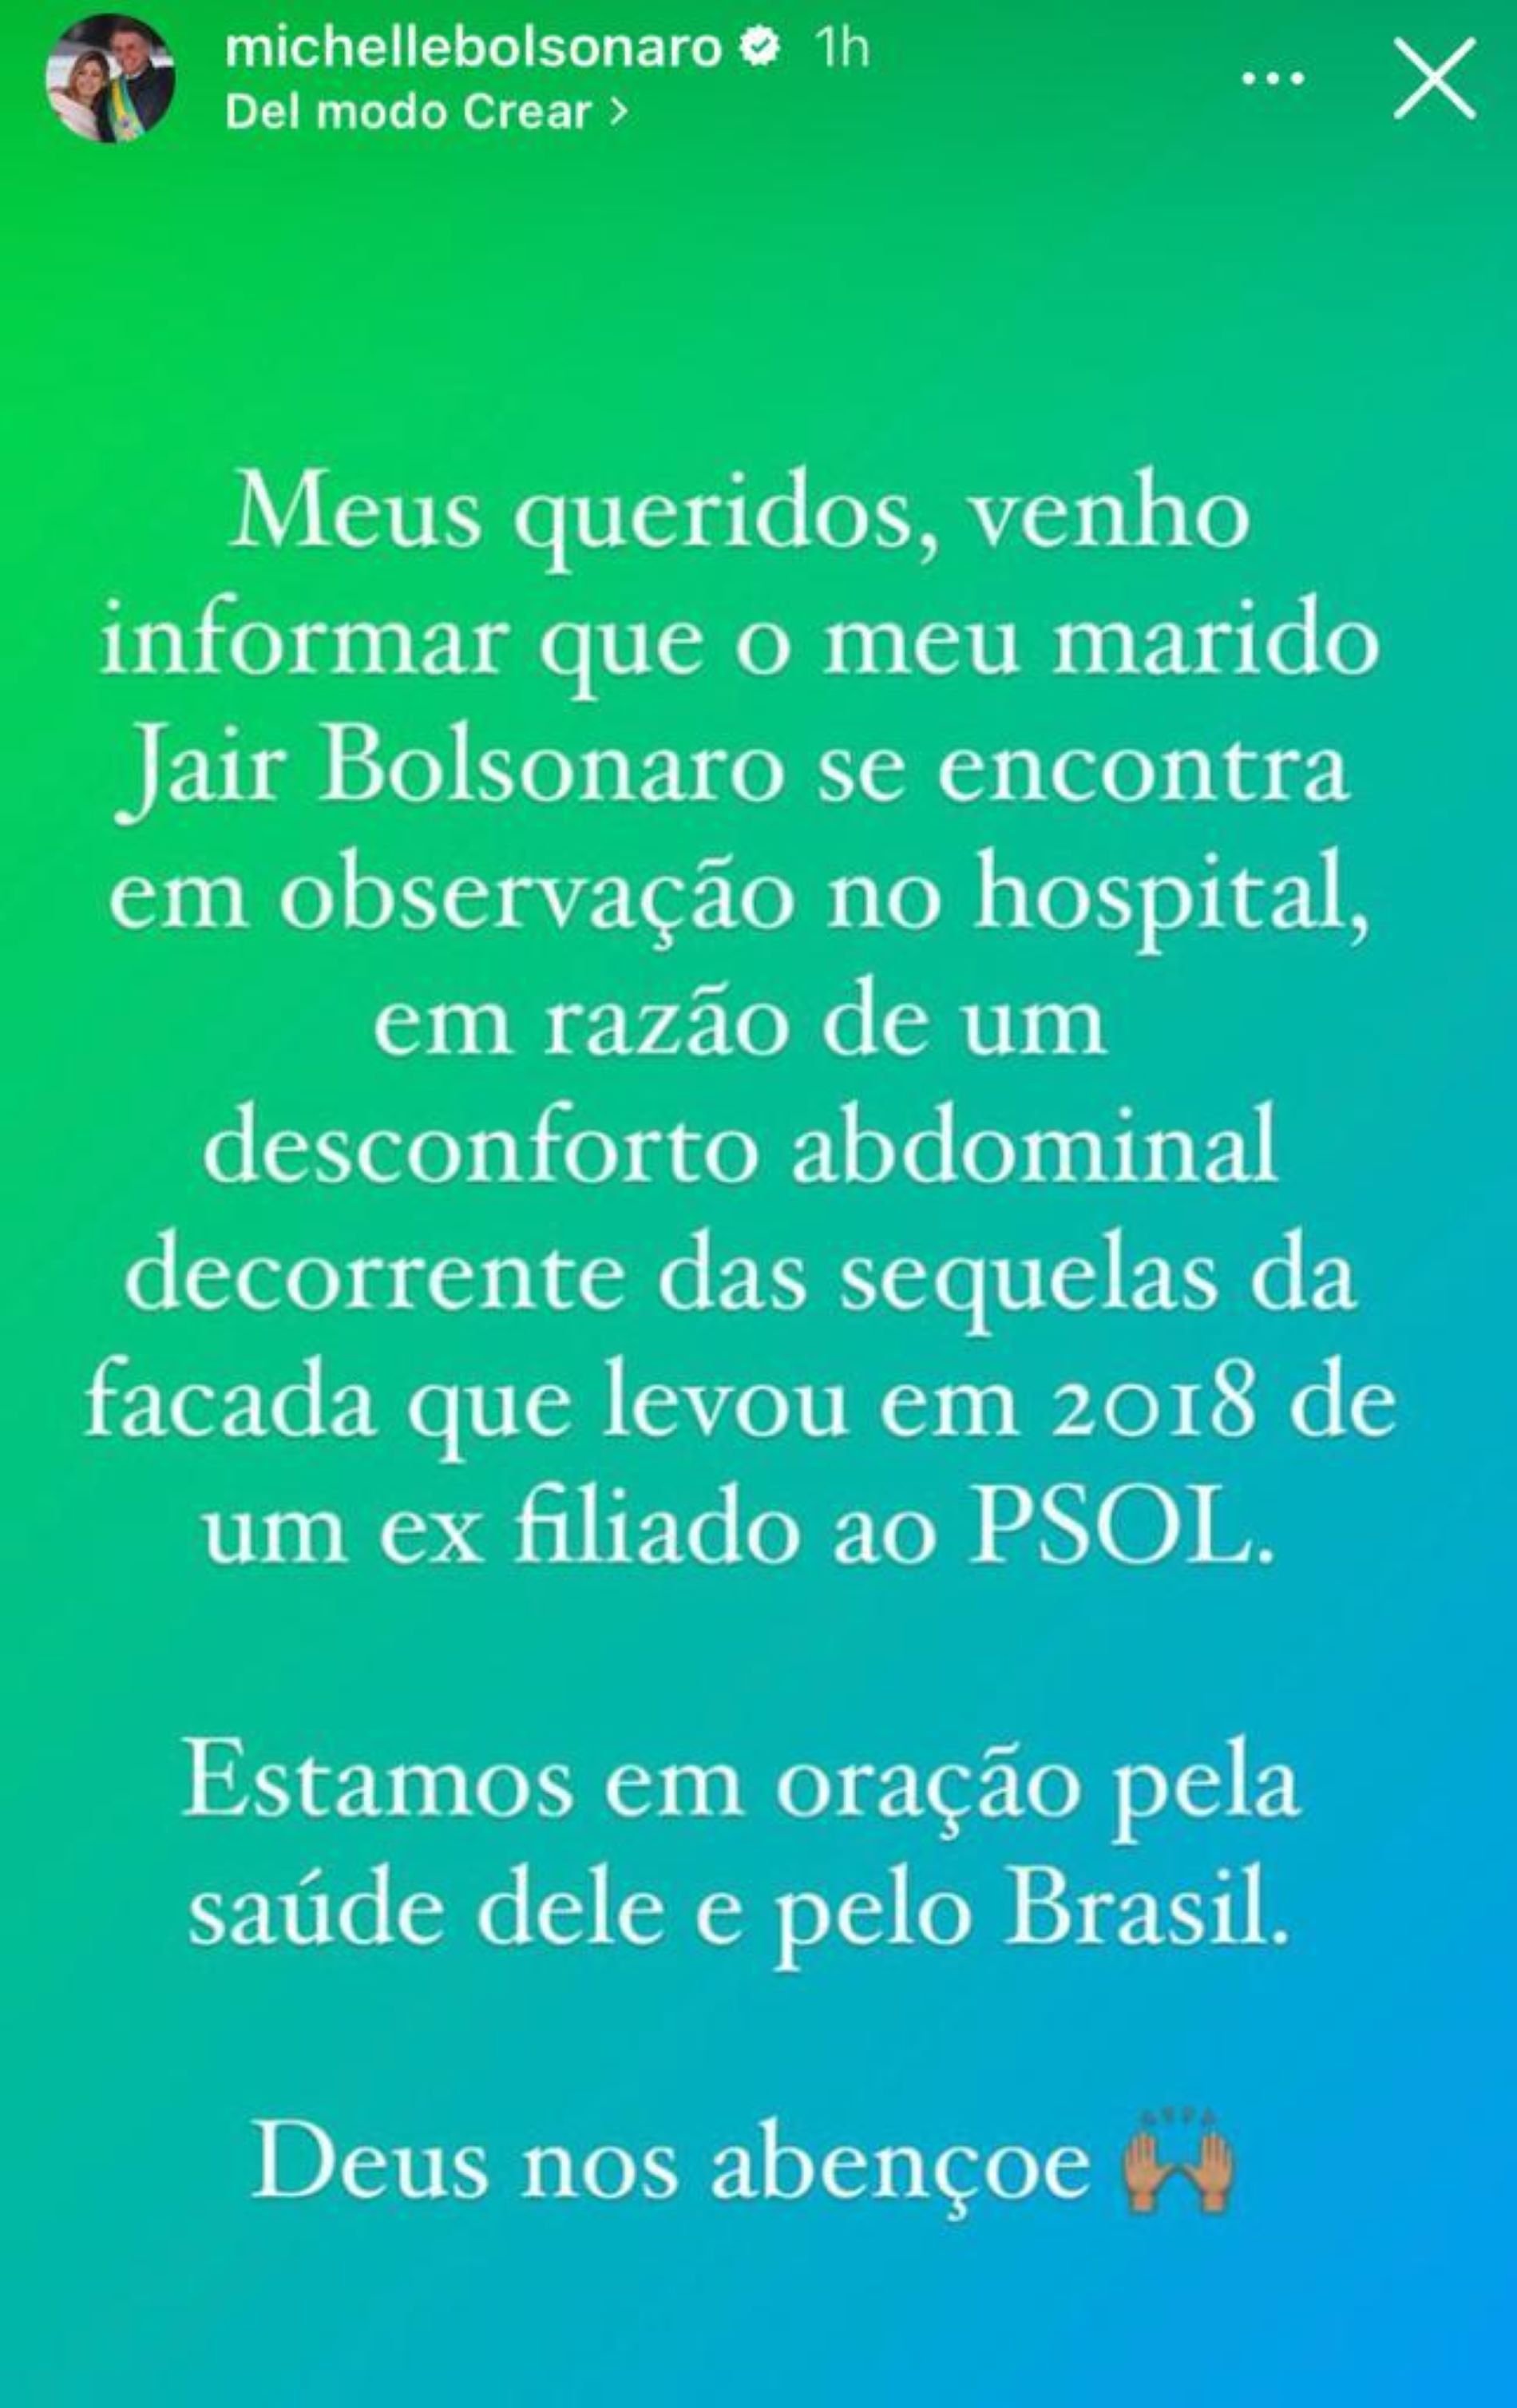 Jair Bolsonaro ingresado, mensaje da Michelle Bolsonaro / Instagram Michelle Bolsonaro